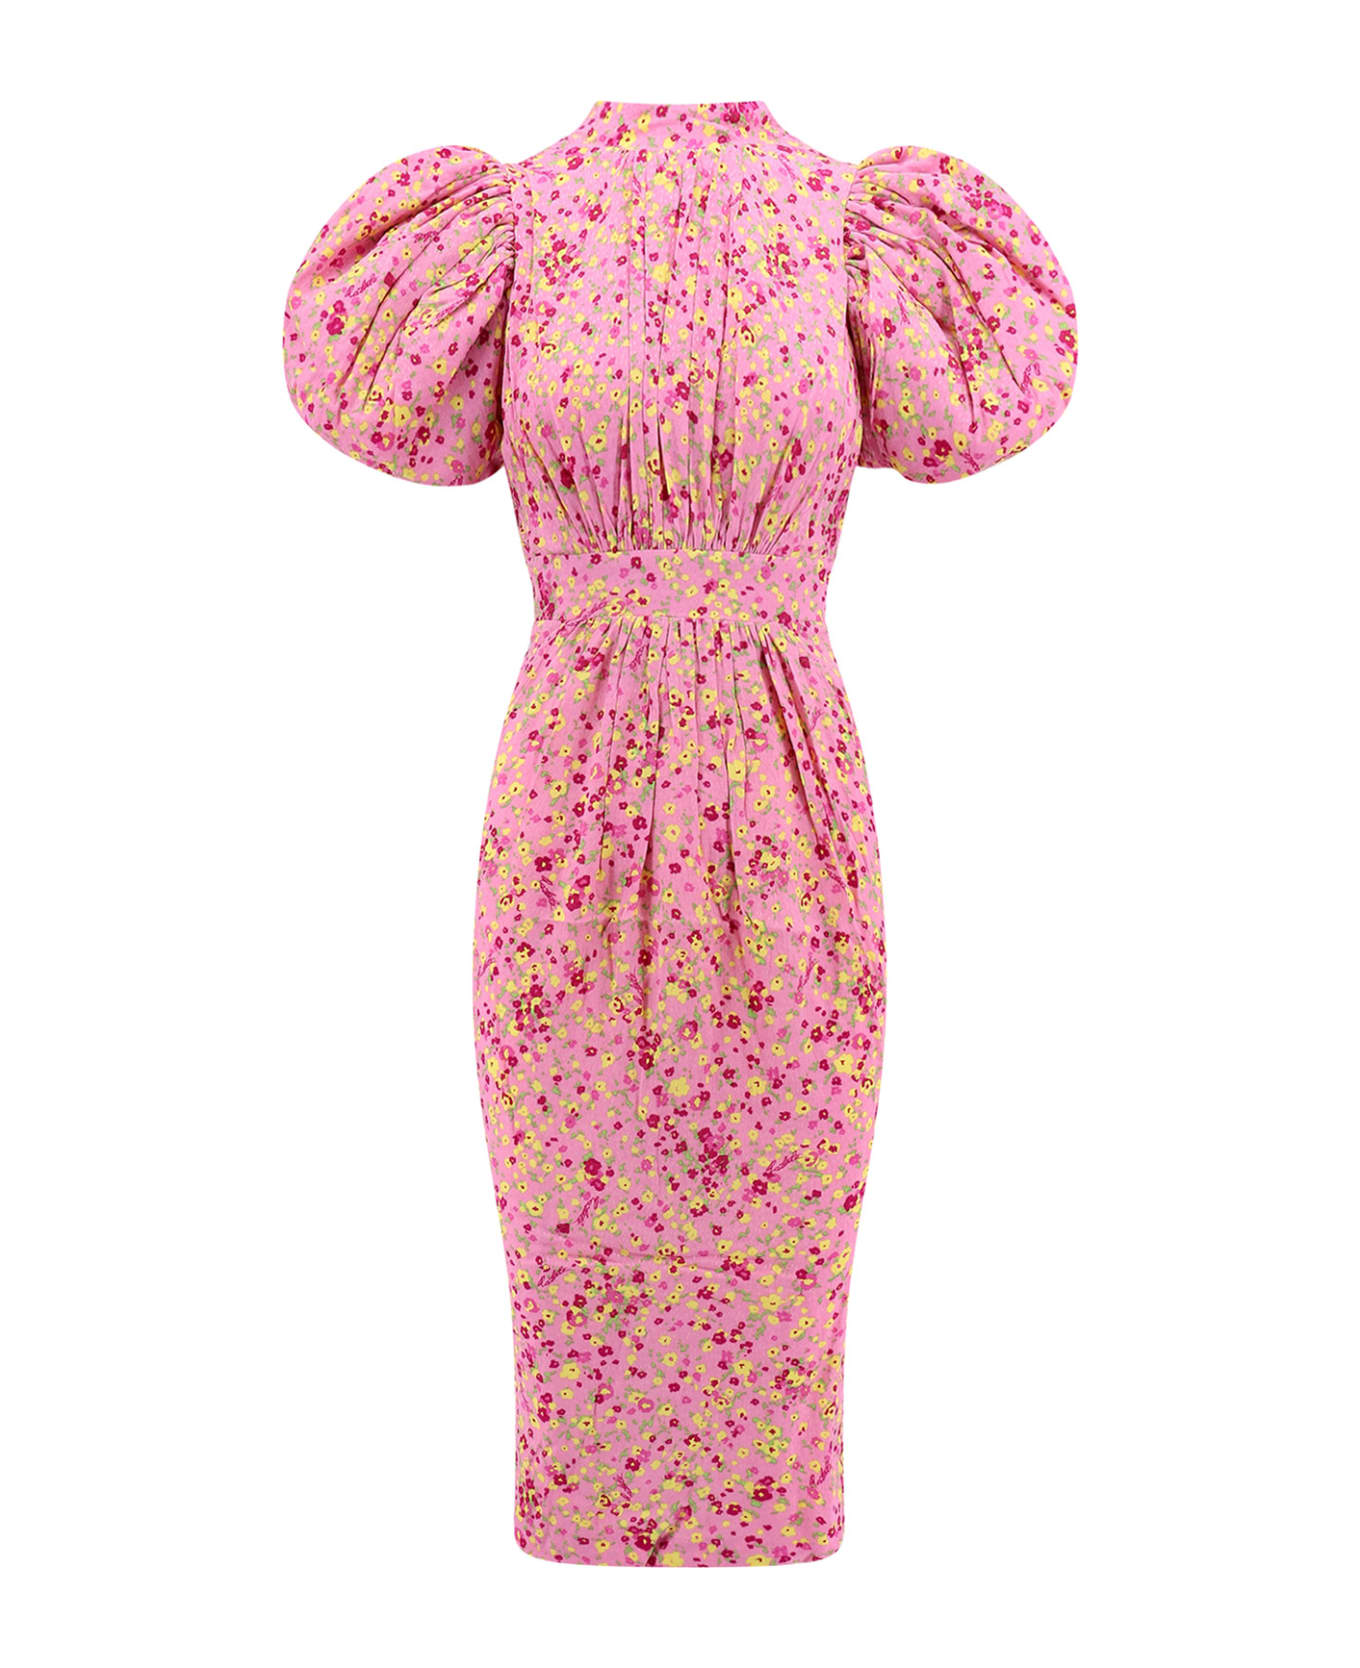 Rotate by Birger Christensen Dress - Pink